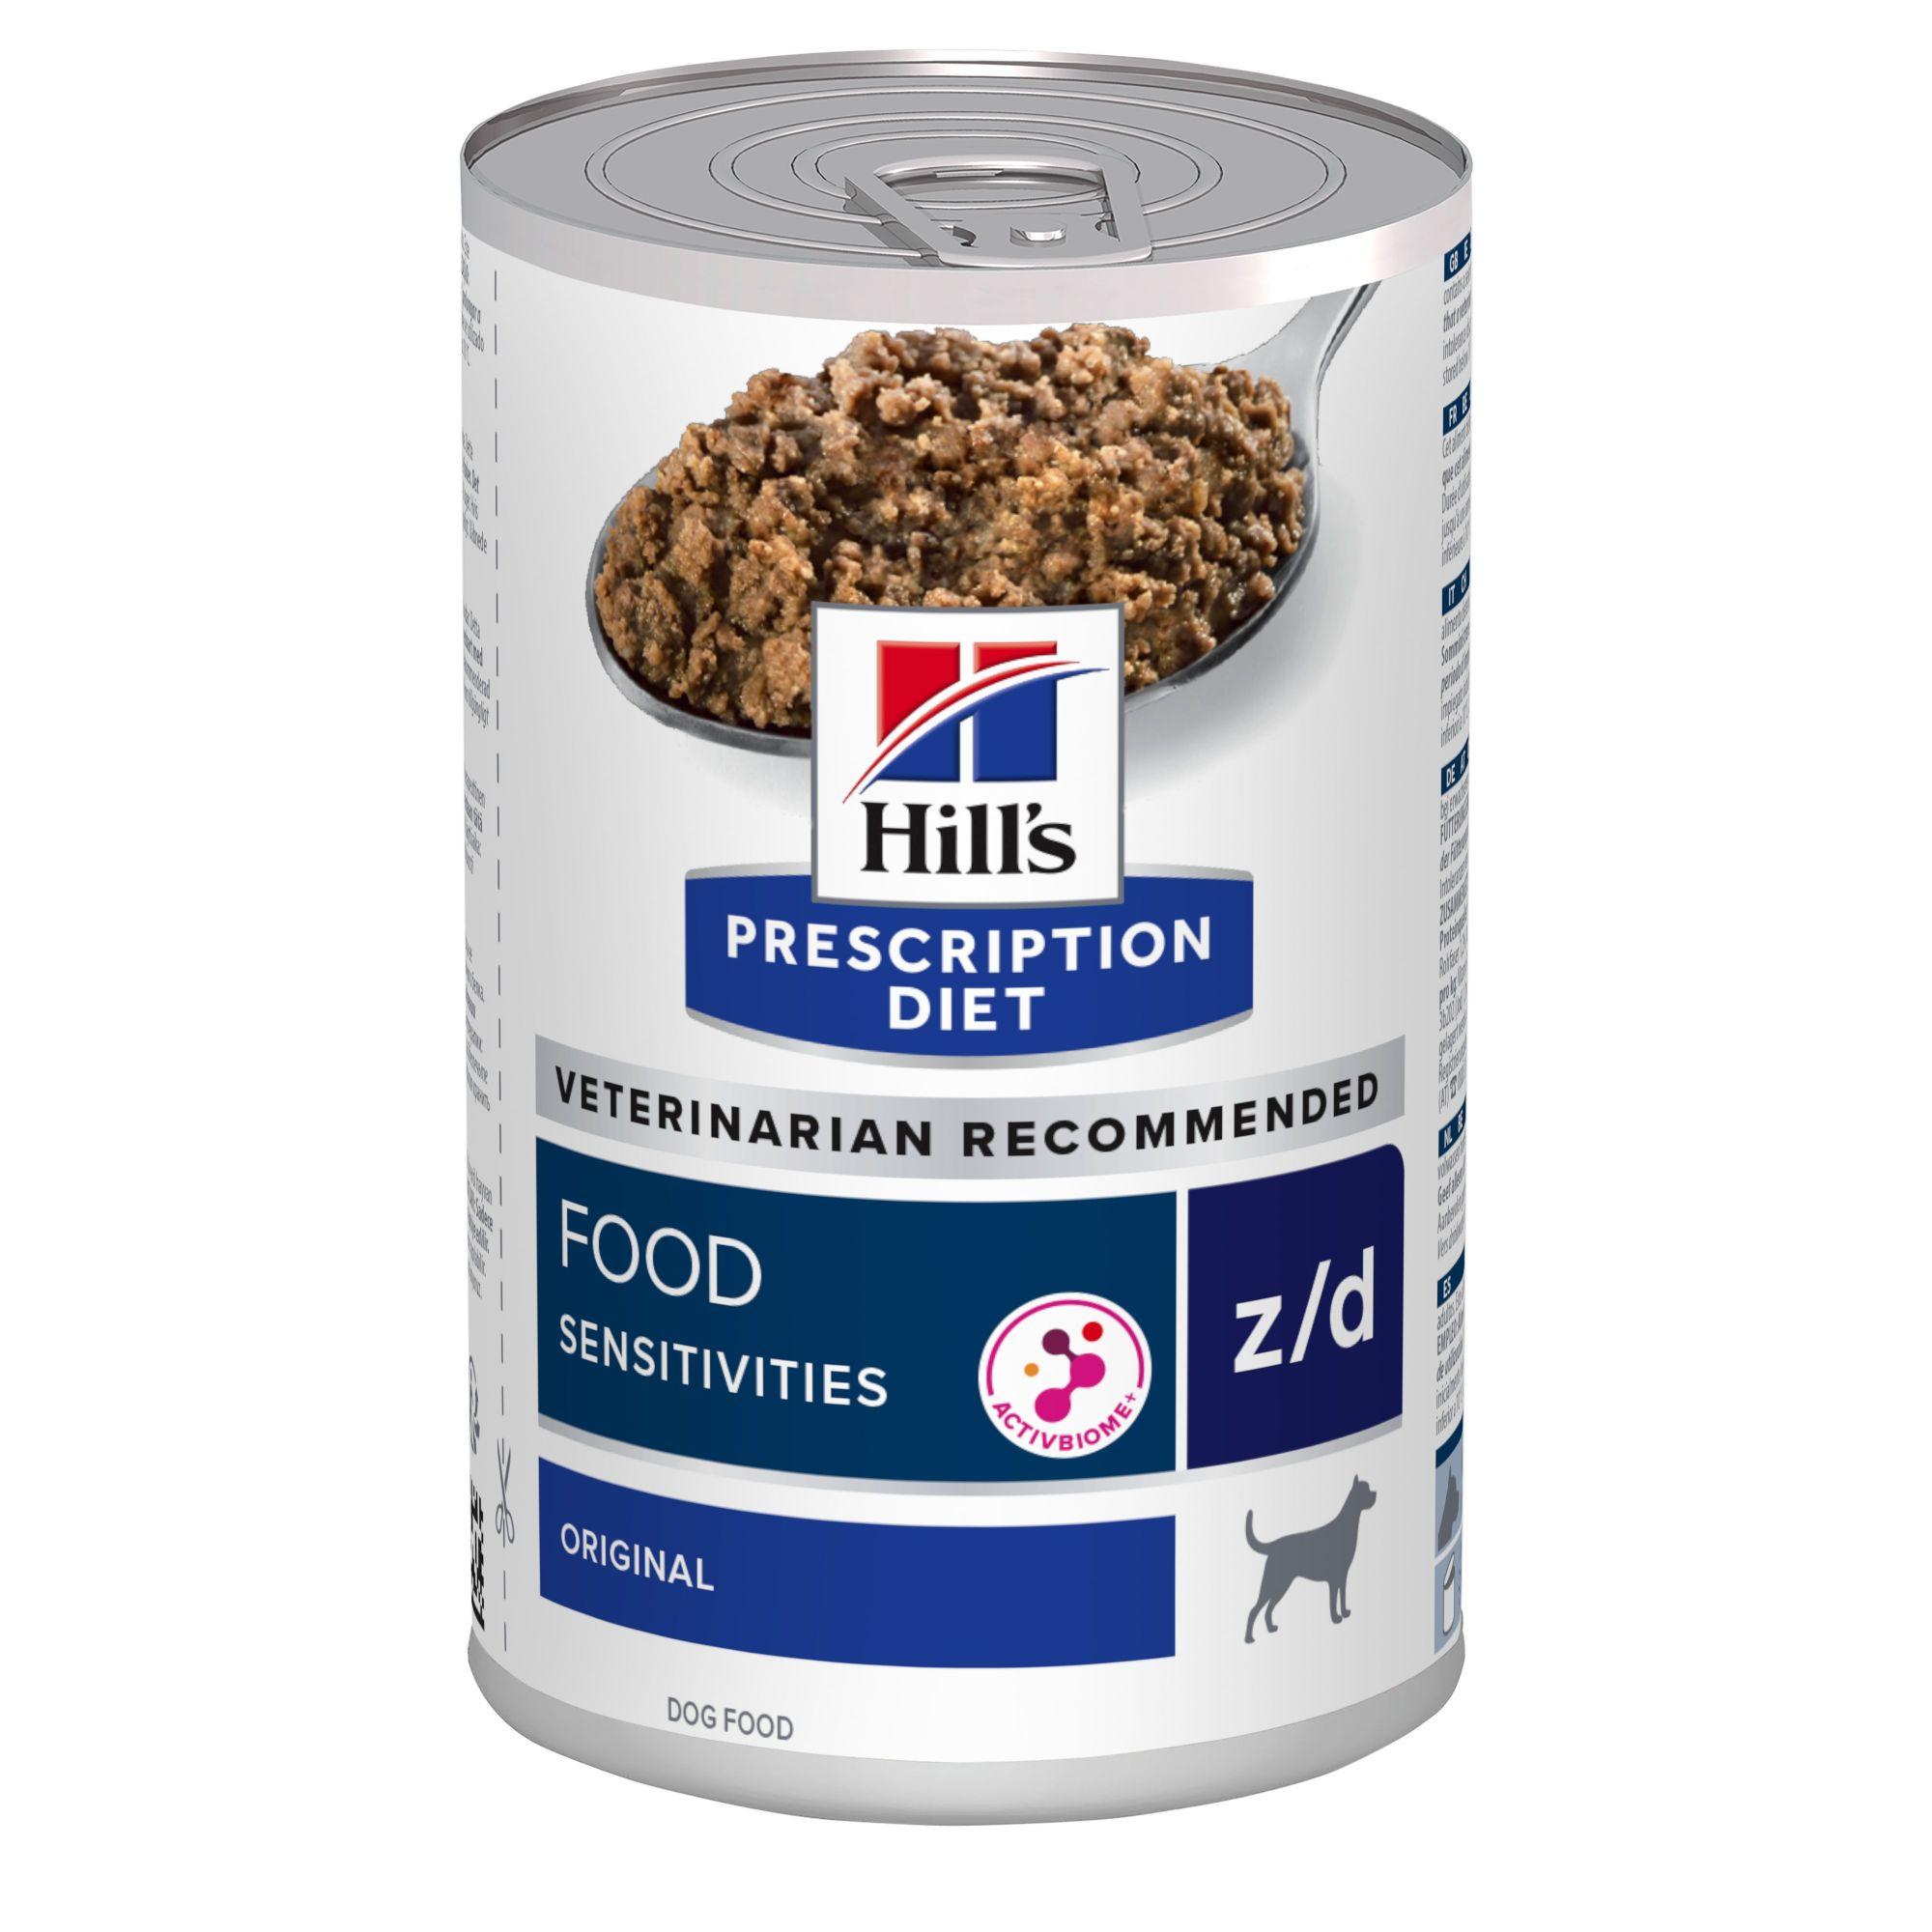 Comida HILL'S Prescrição Diet Z/D Food Sensitivies para cão adulto